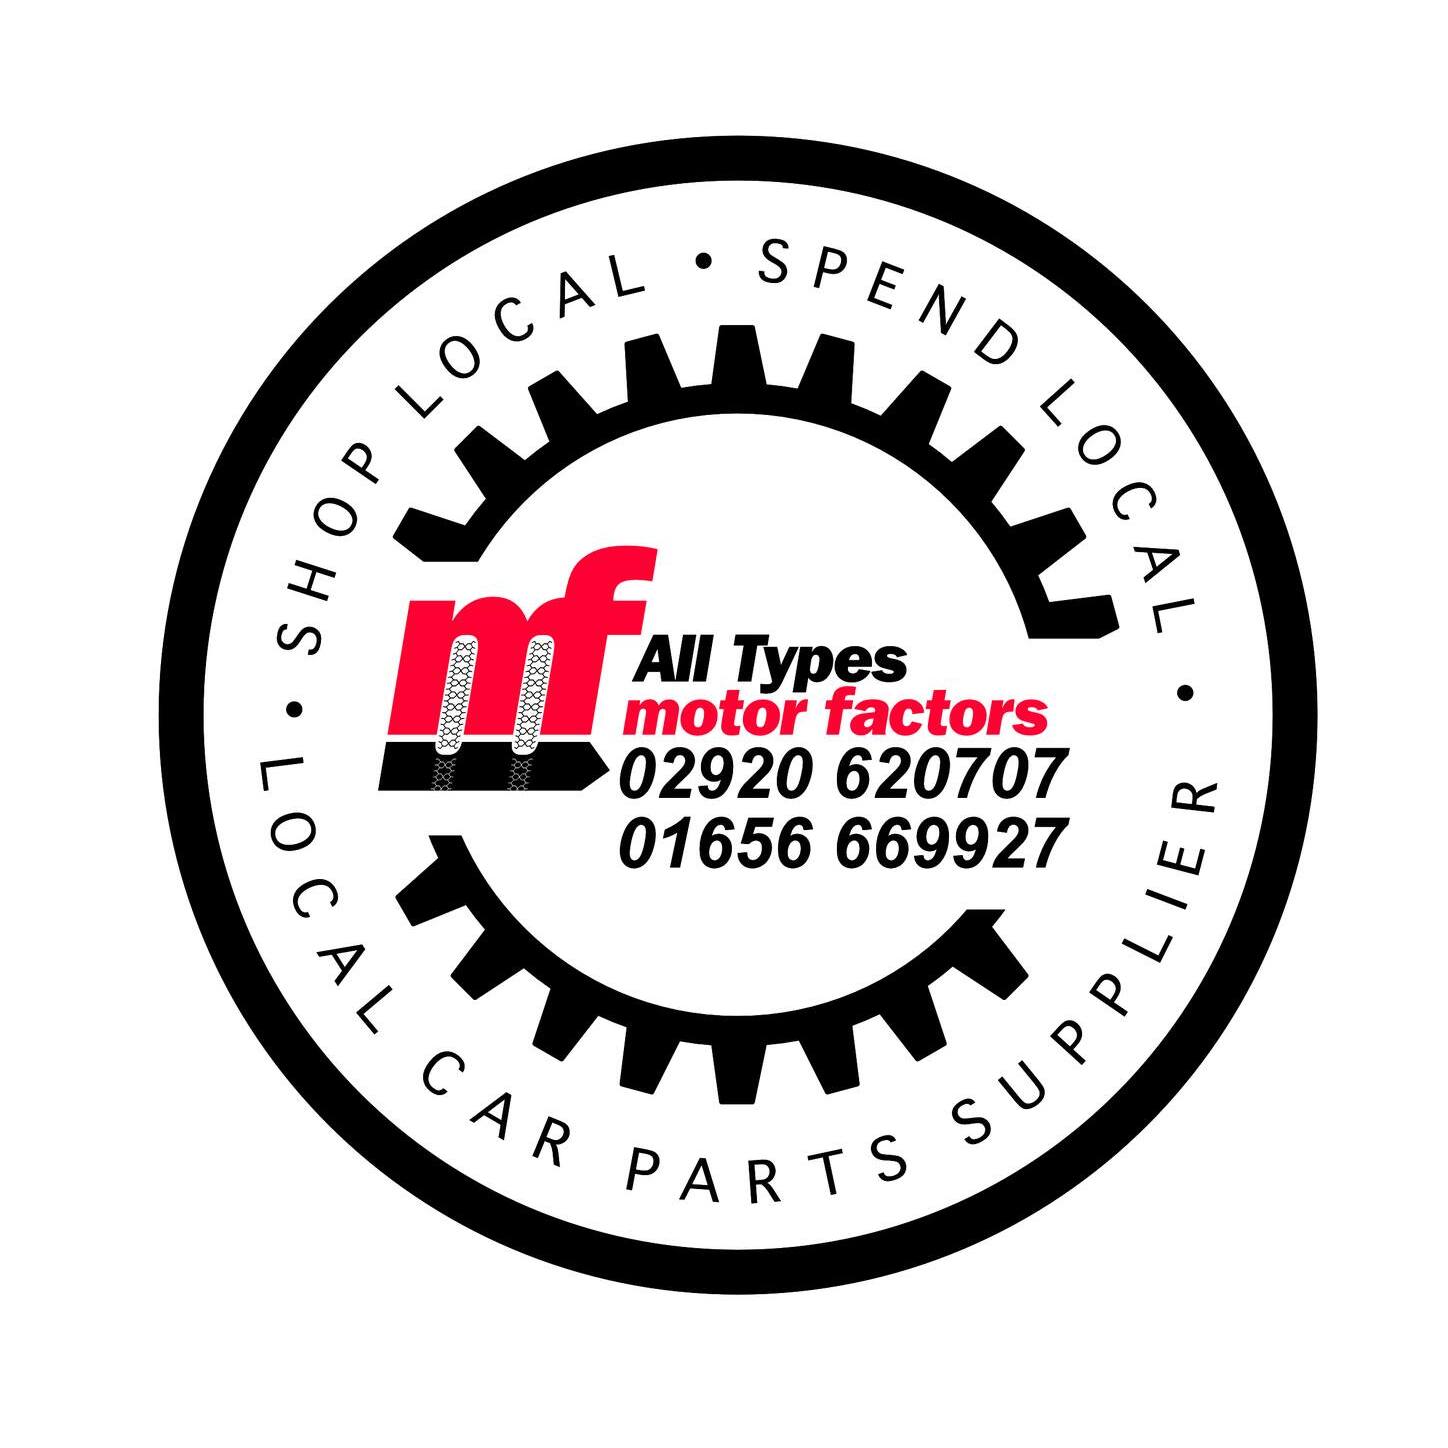 All Types Motor Factors Ltd